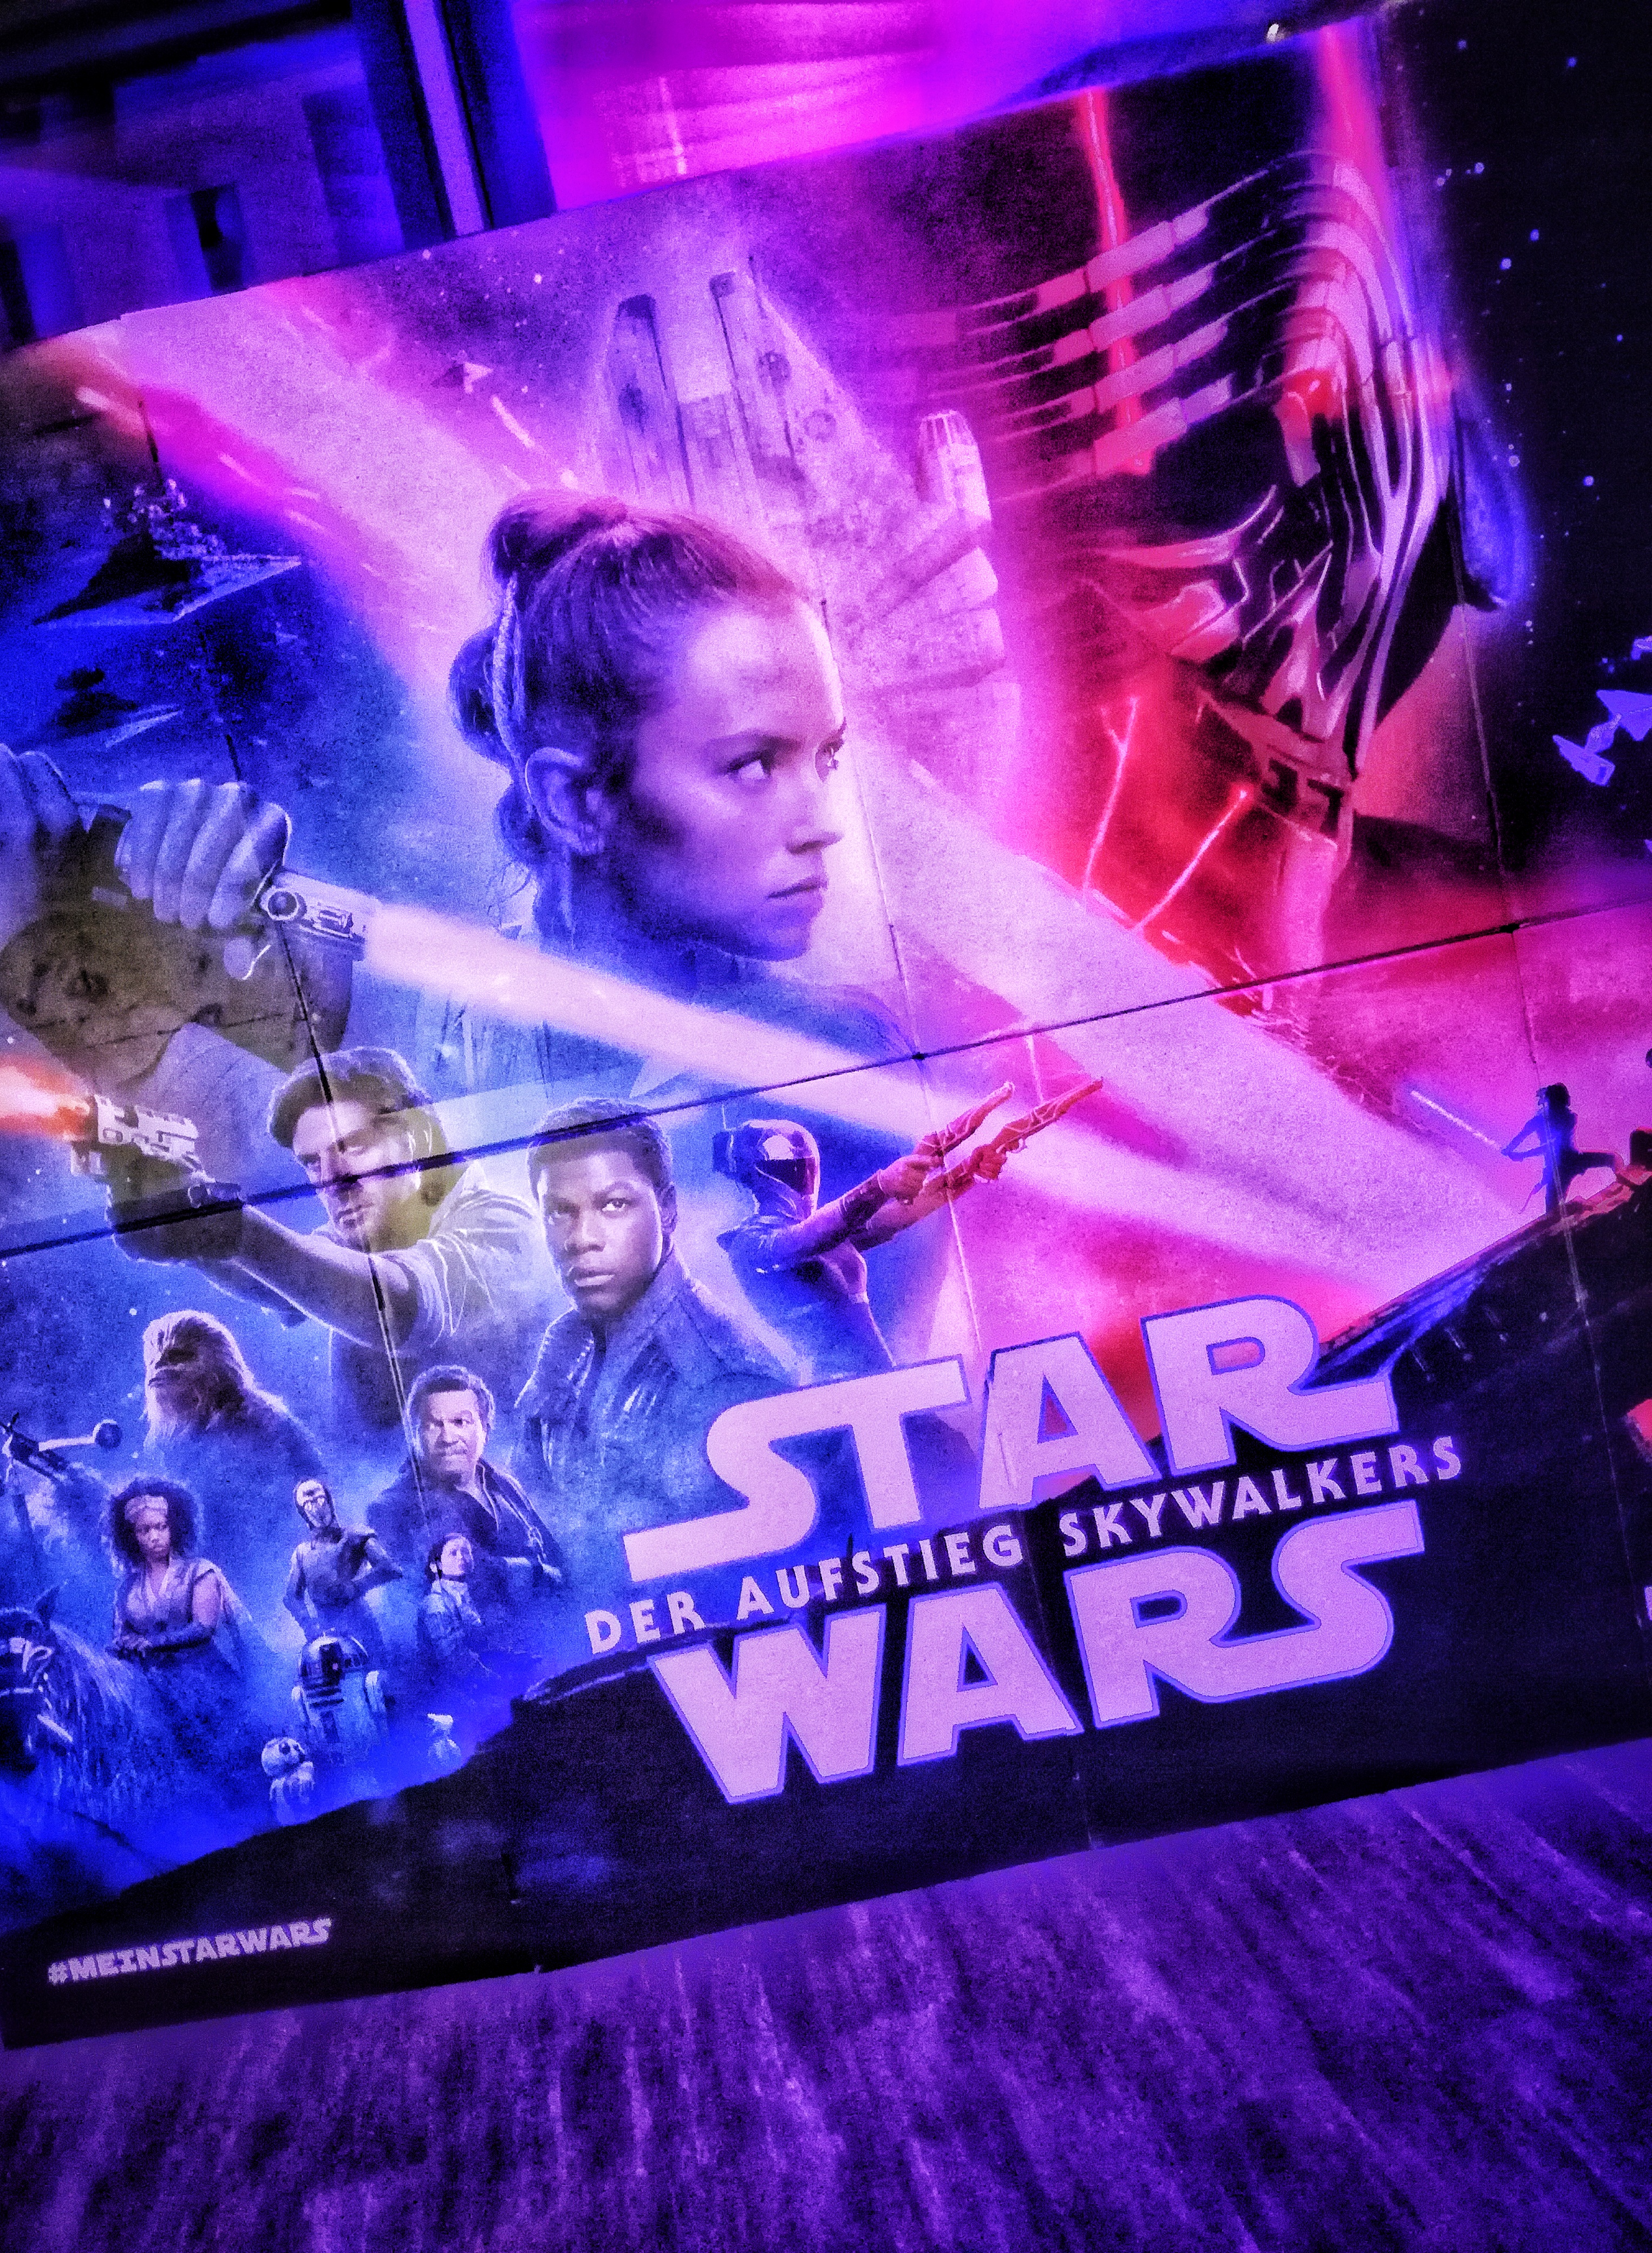 Der Aufstieg Skywalkers Poster